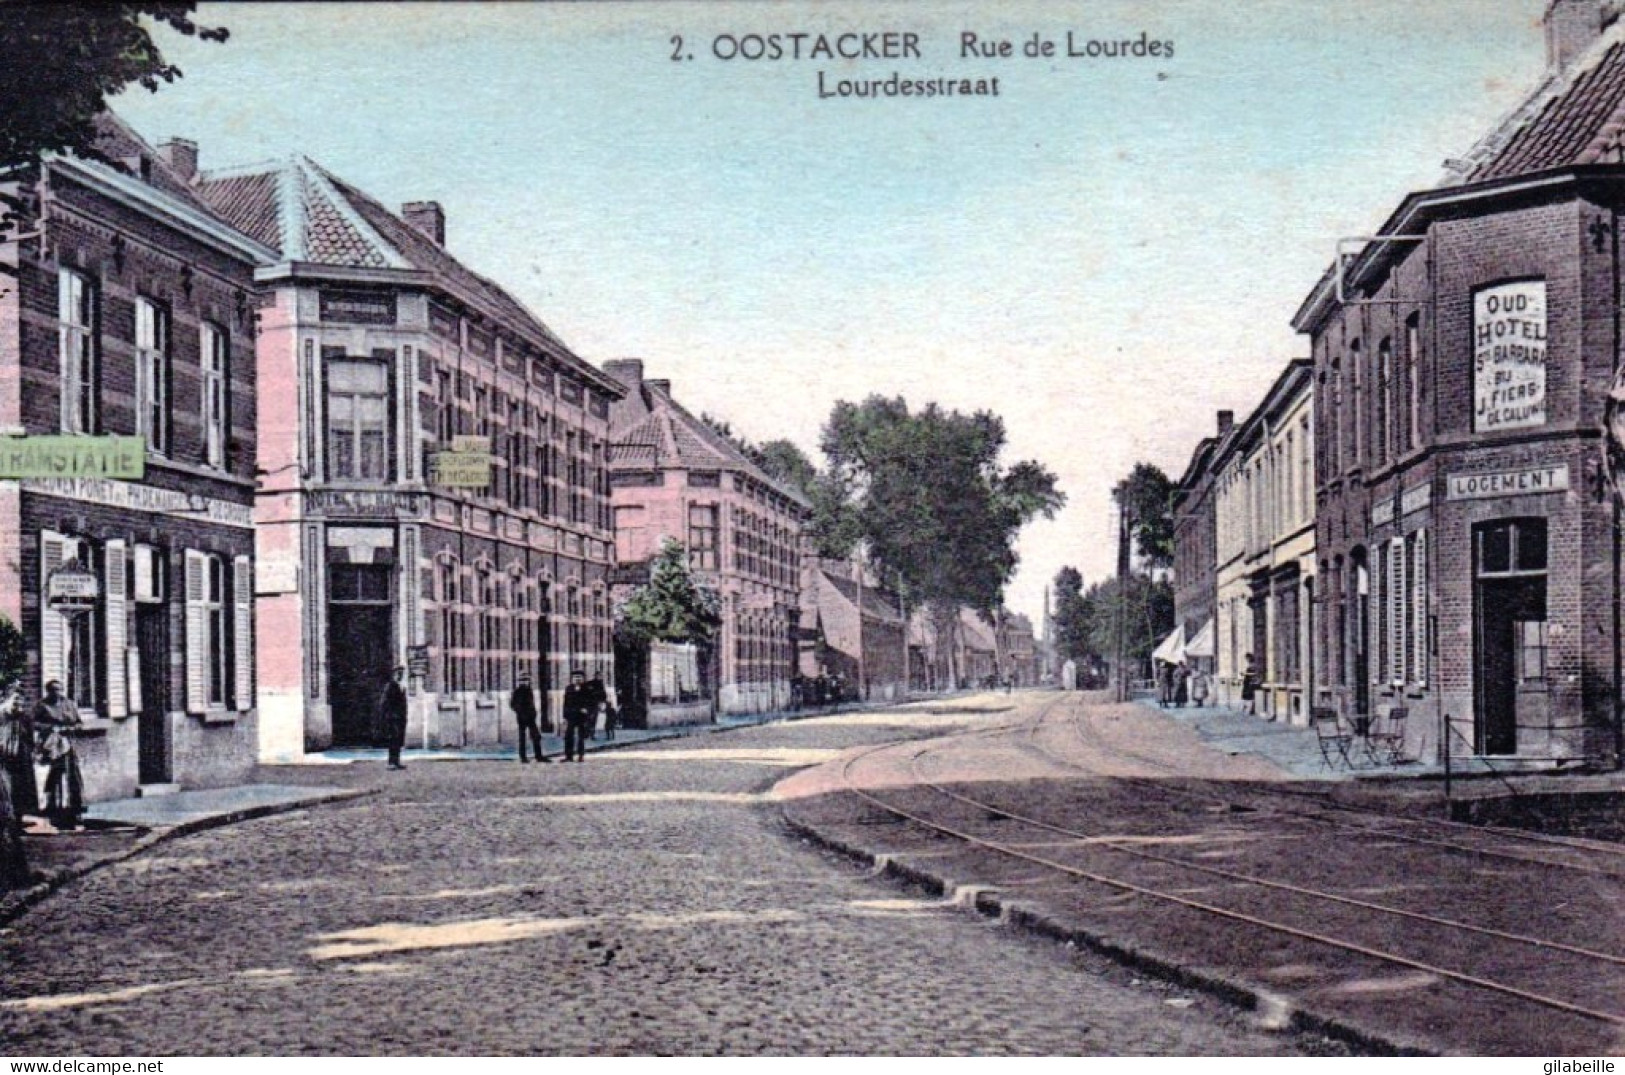 GENT - OOSTACKER - Rue De Lourdes - Gent